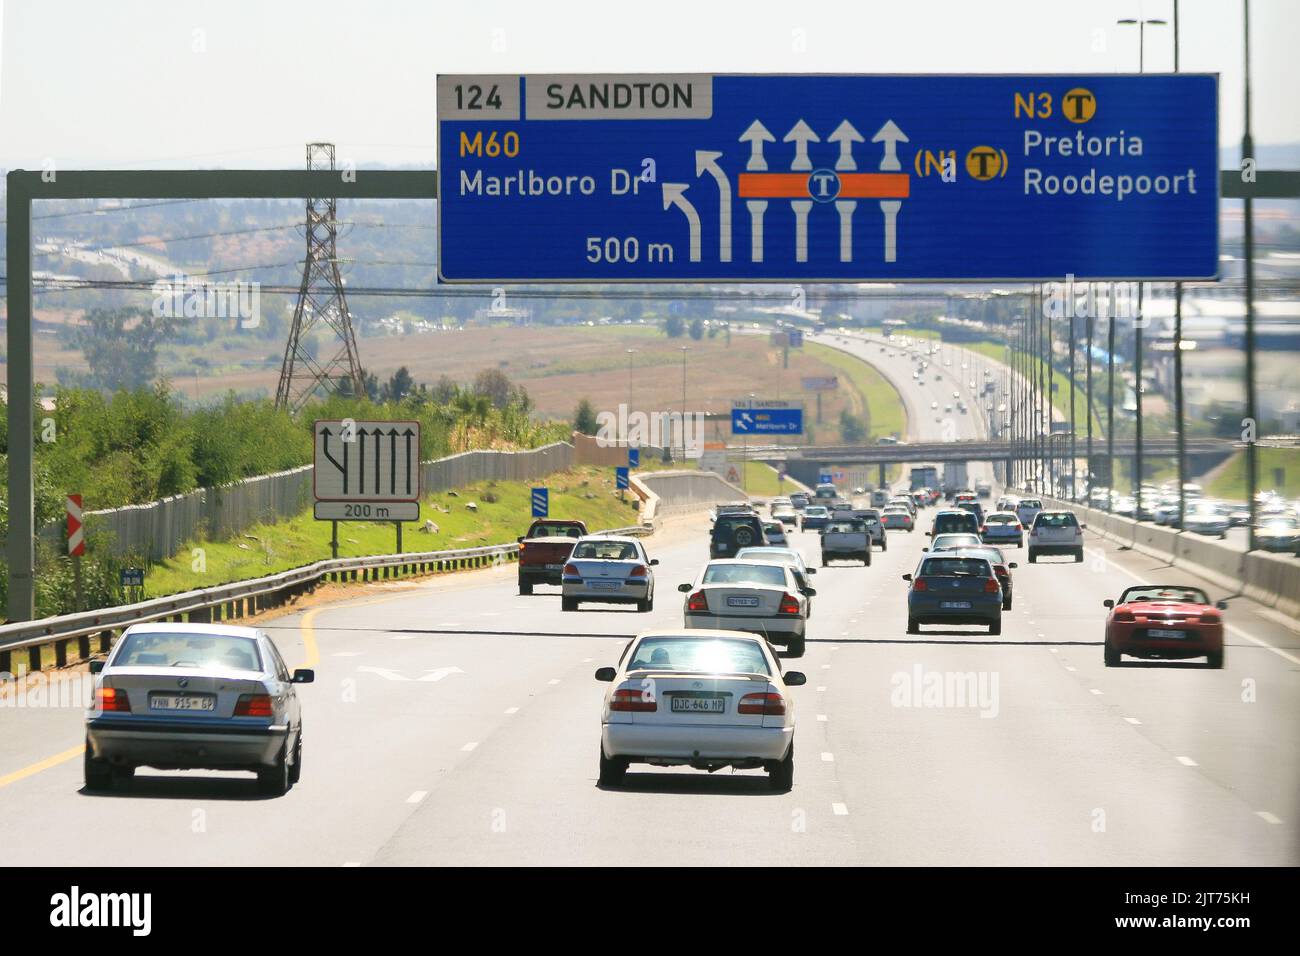 Johannesburg, Sud Africa - 04 11 2012 : Marlboro Drive segnaletica stradale e veicoli. Foto Stock